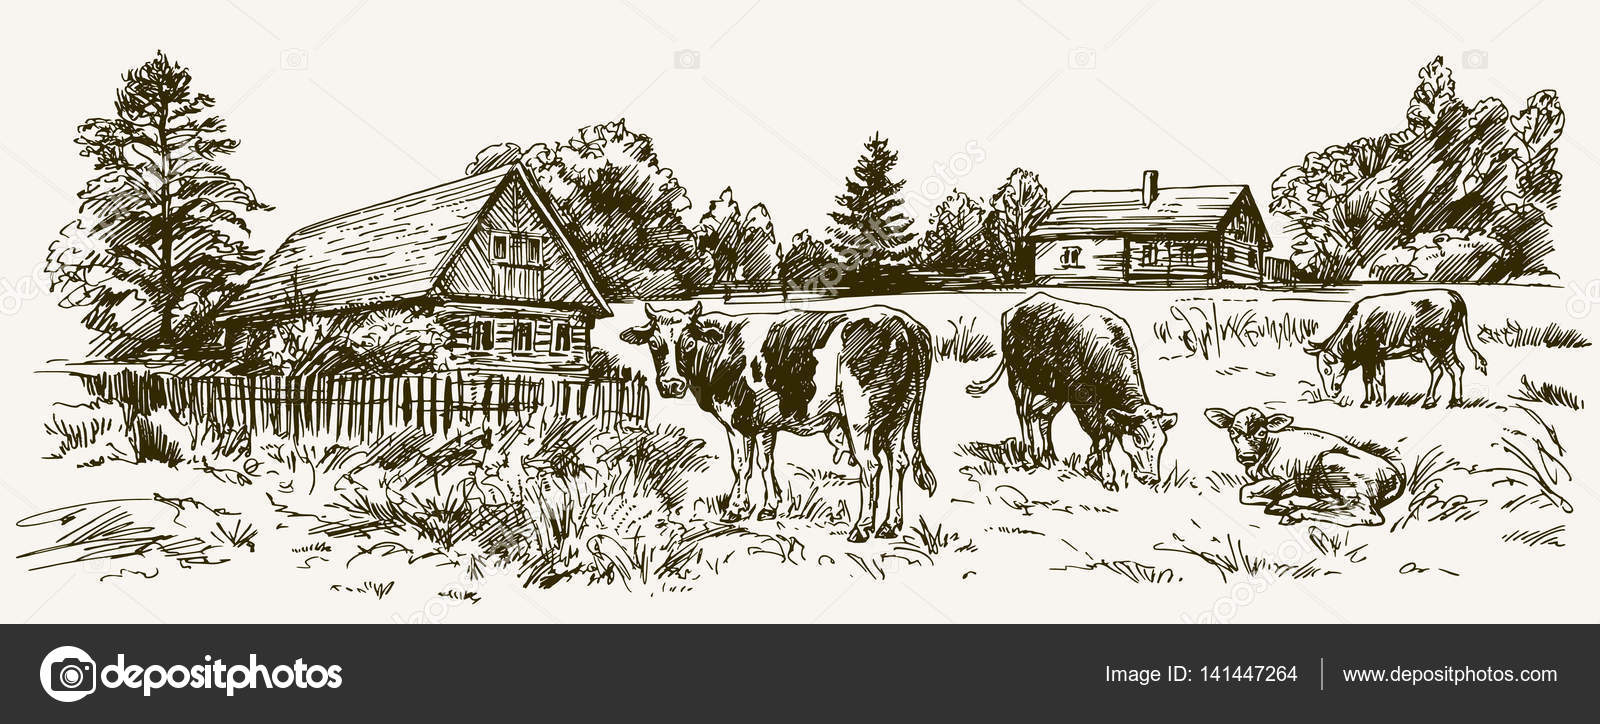 Деревня корова вектор